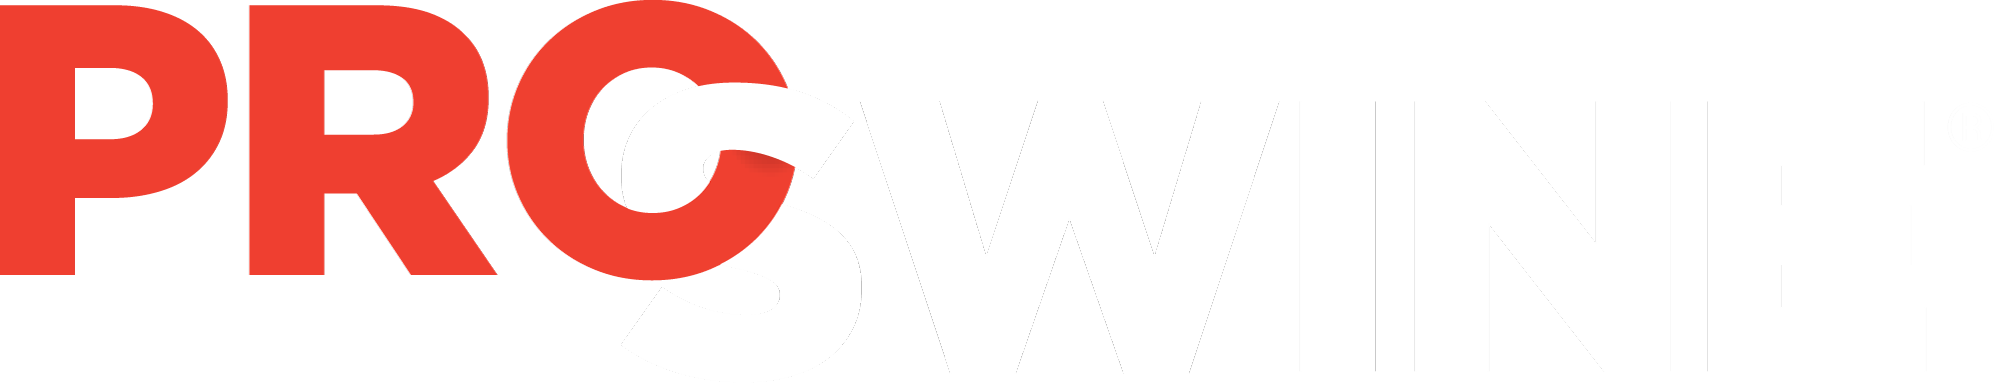 pro-swine-logo